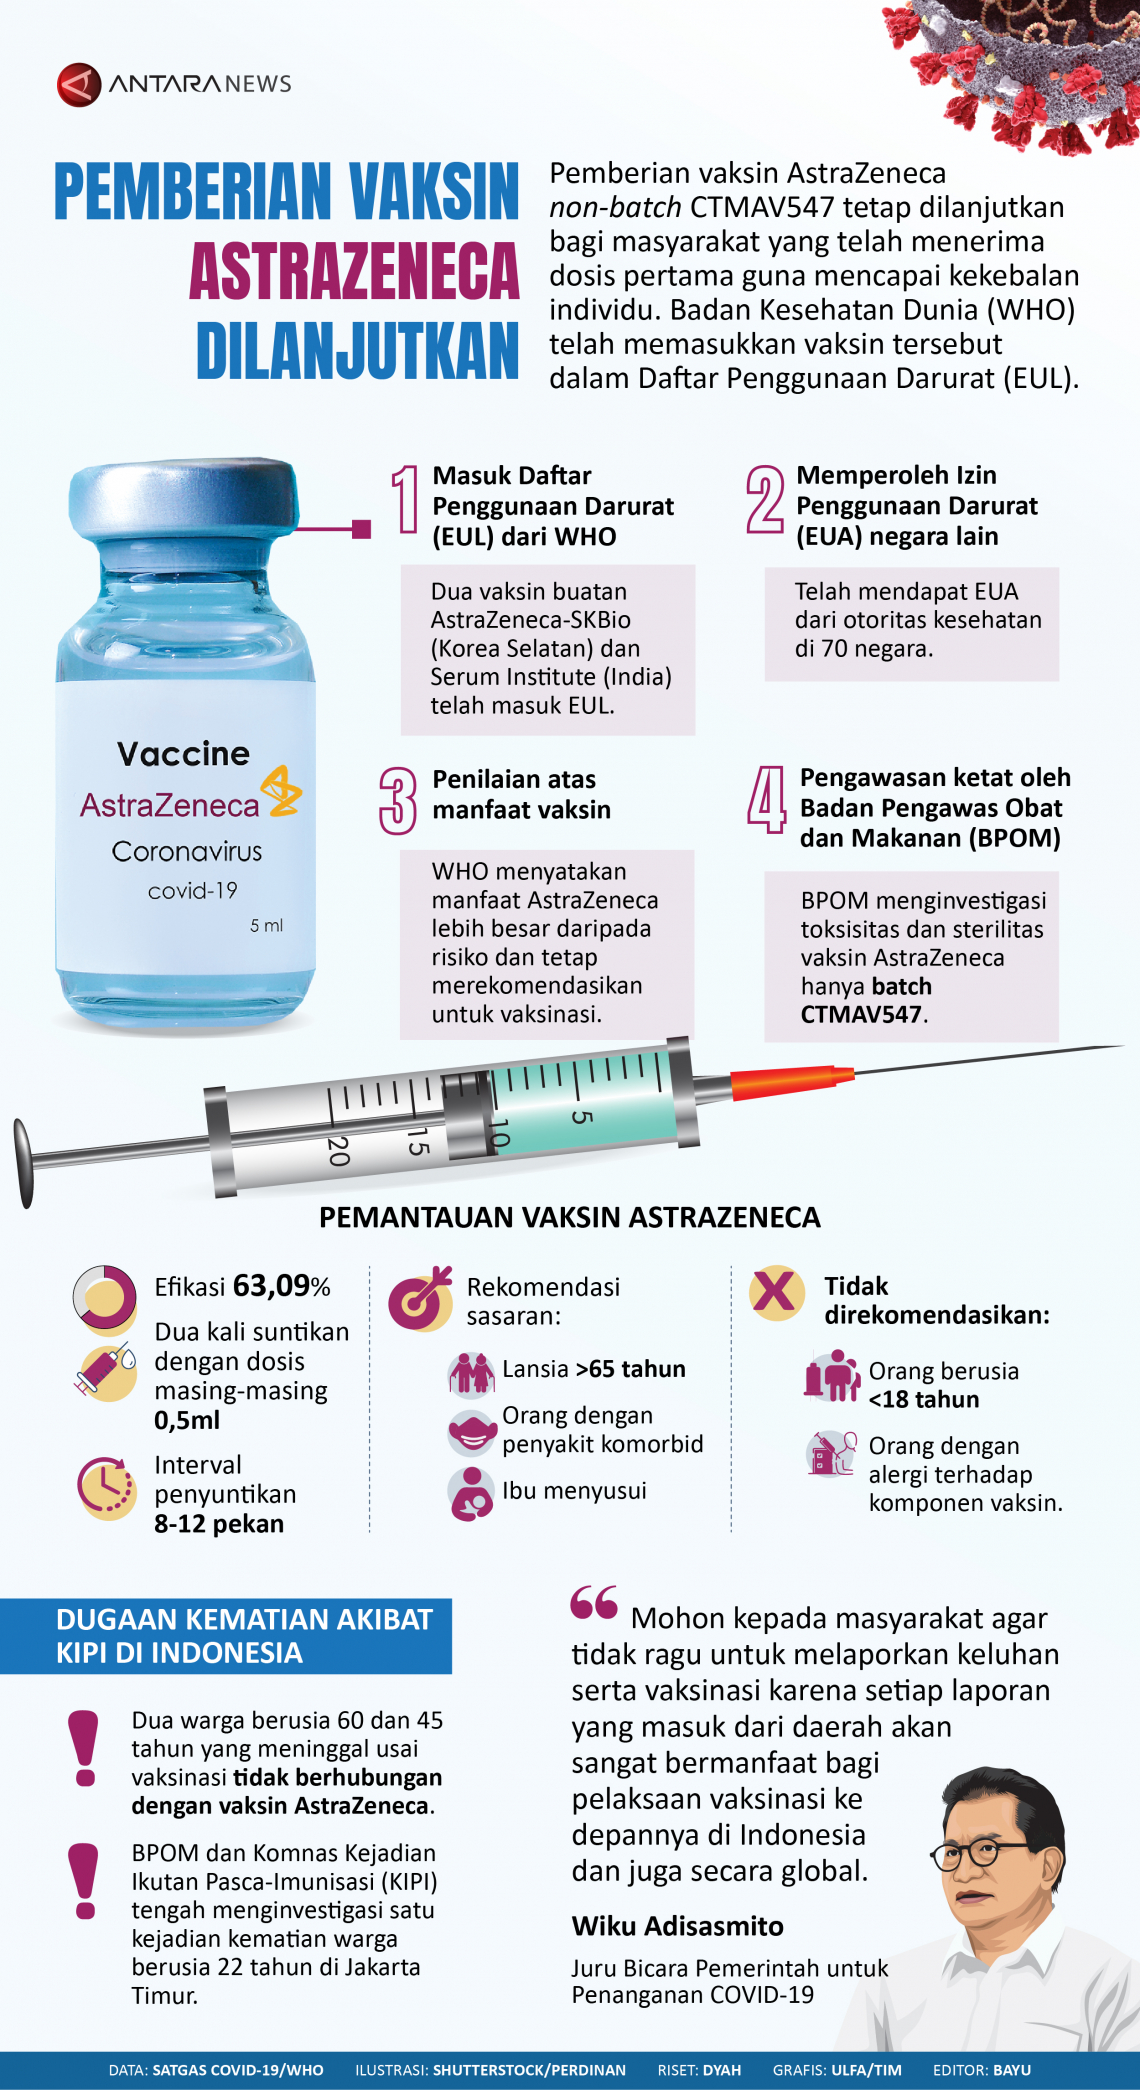 Samping berapa lama efek vaksin astrazeneca Terlambat Jauh